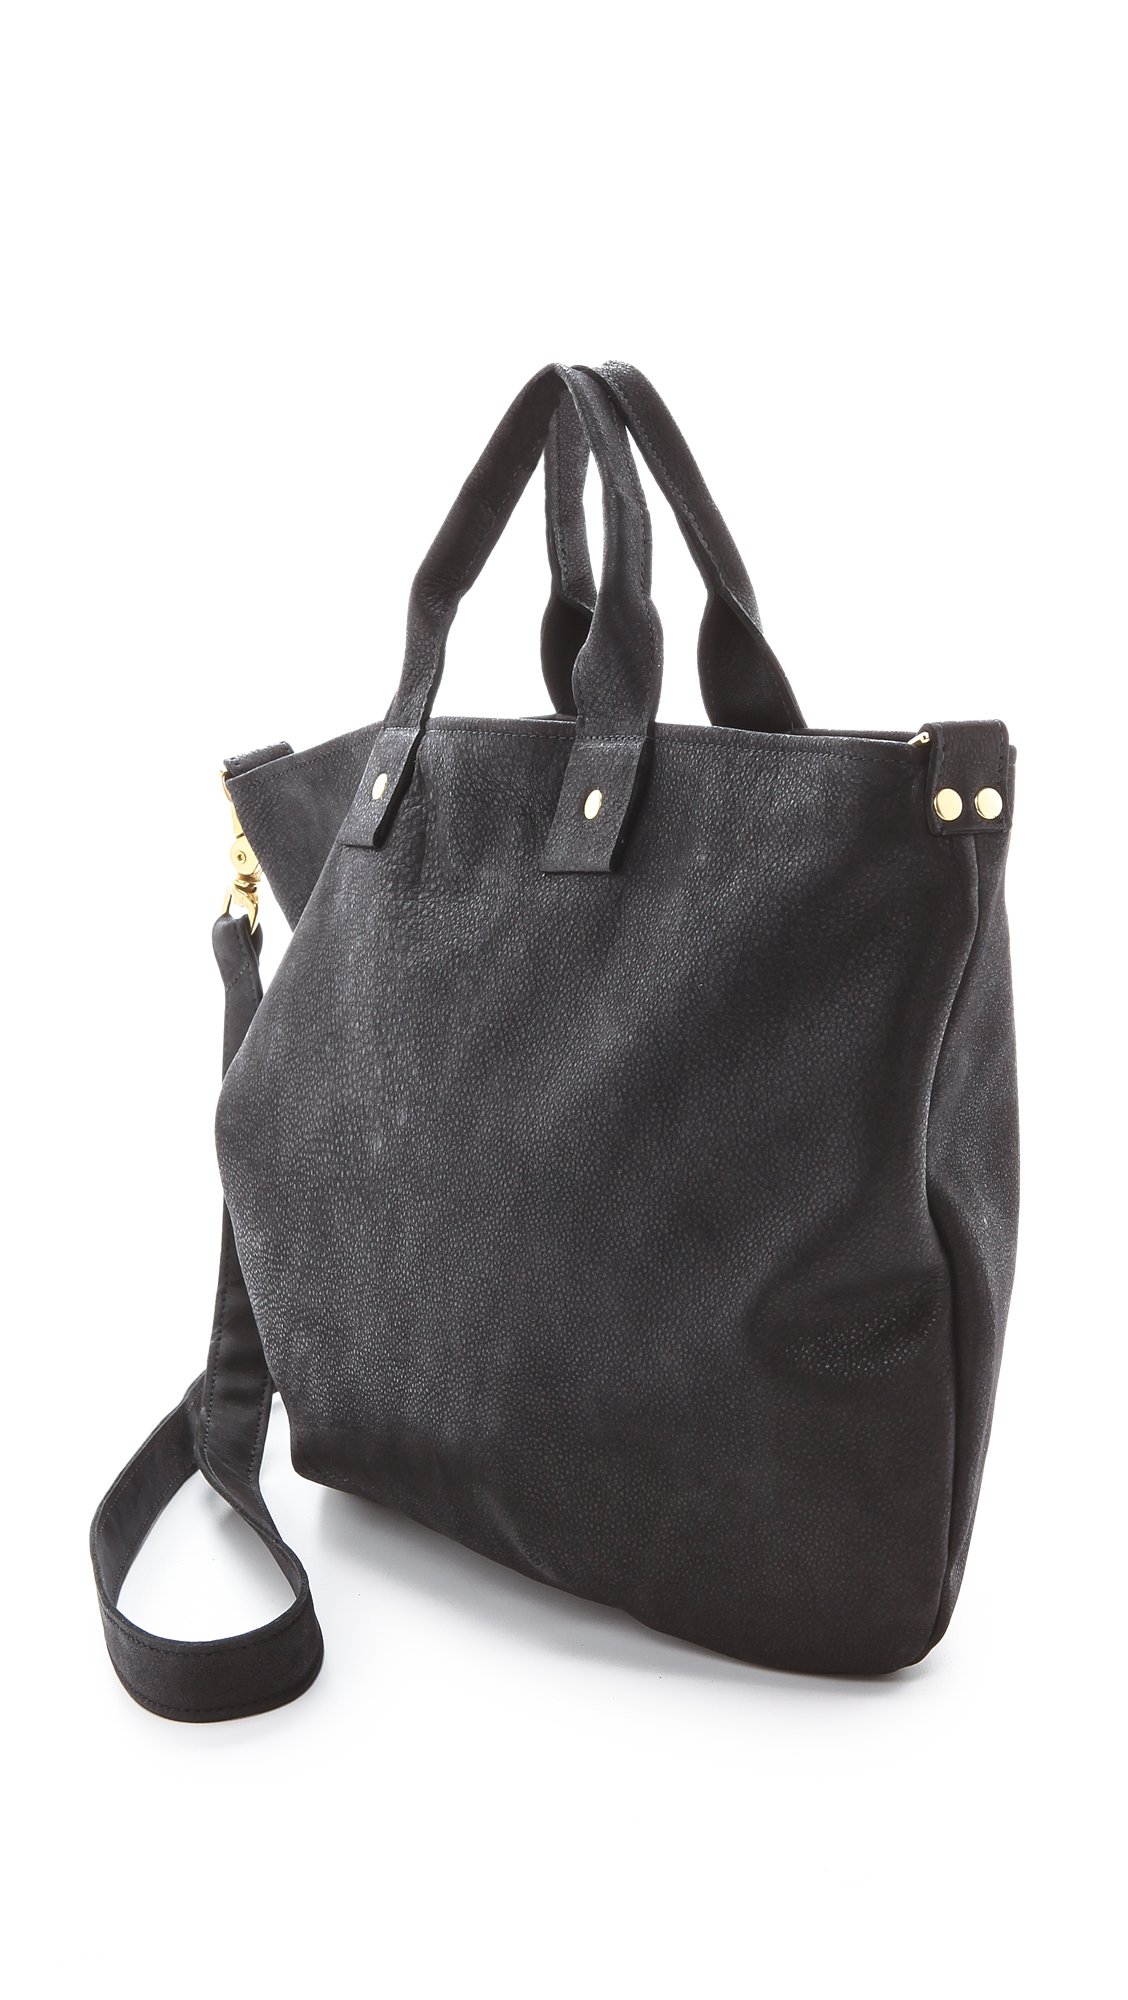 Lyst - Clare V. Messenger Bag in Black